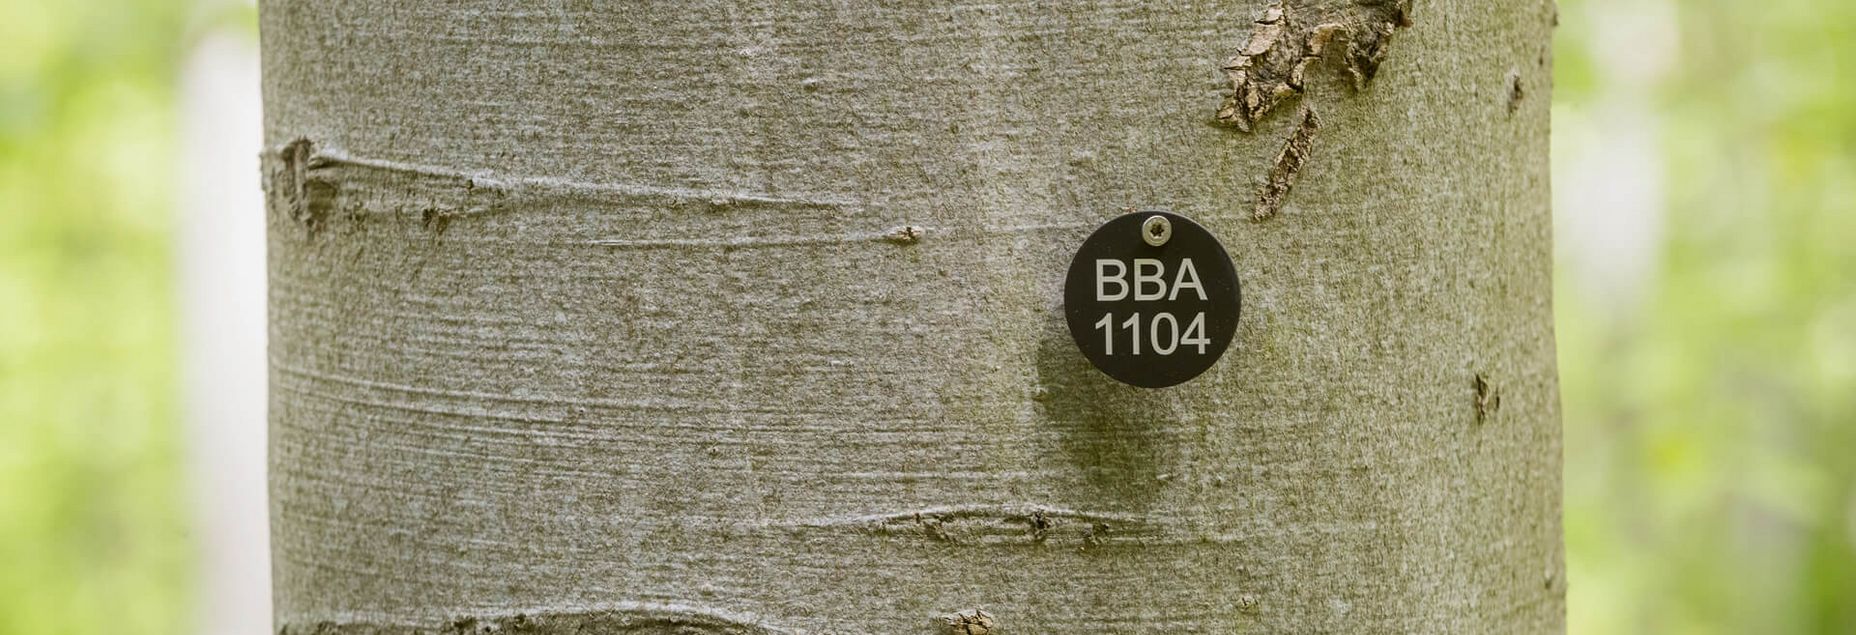 Baum BBA 1104 - Plakette